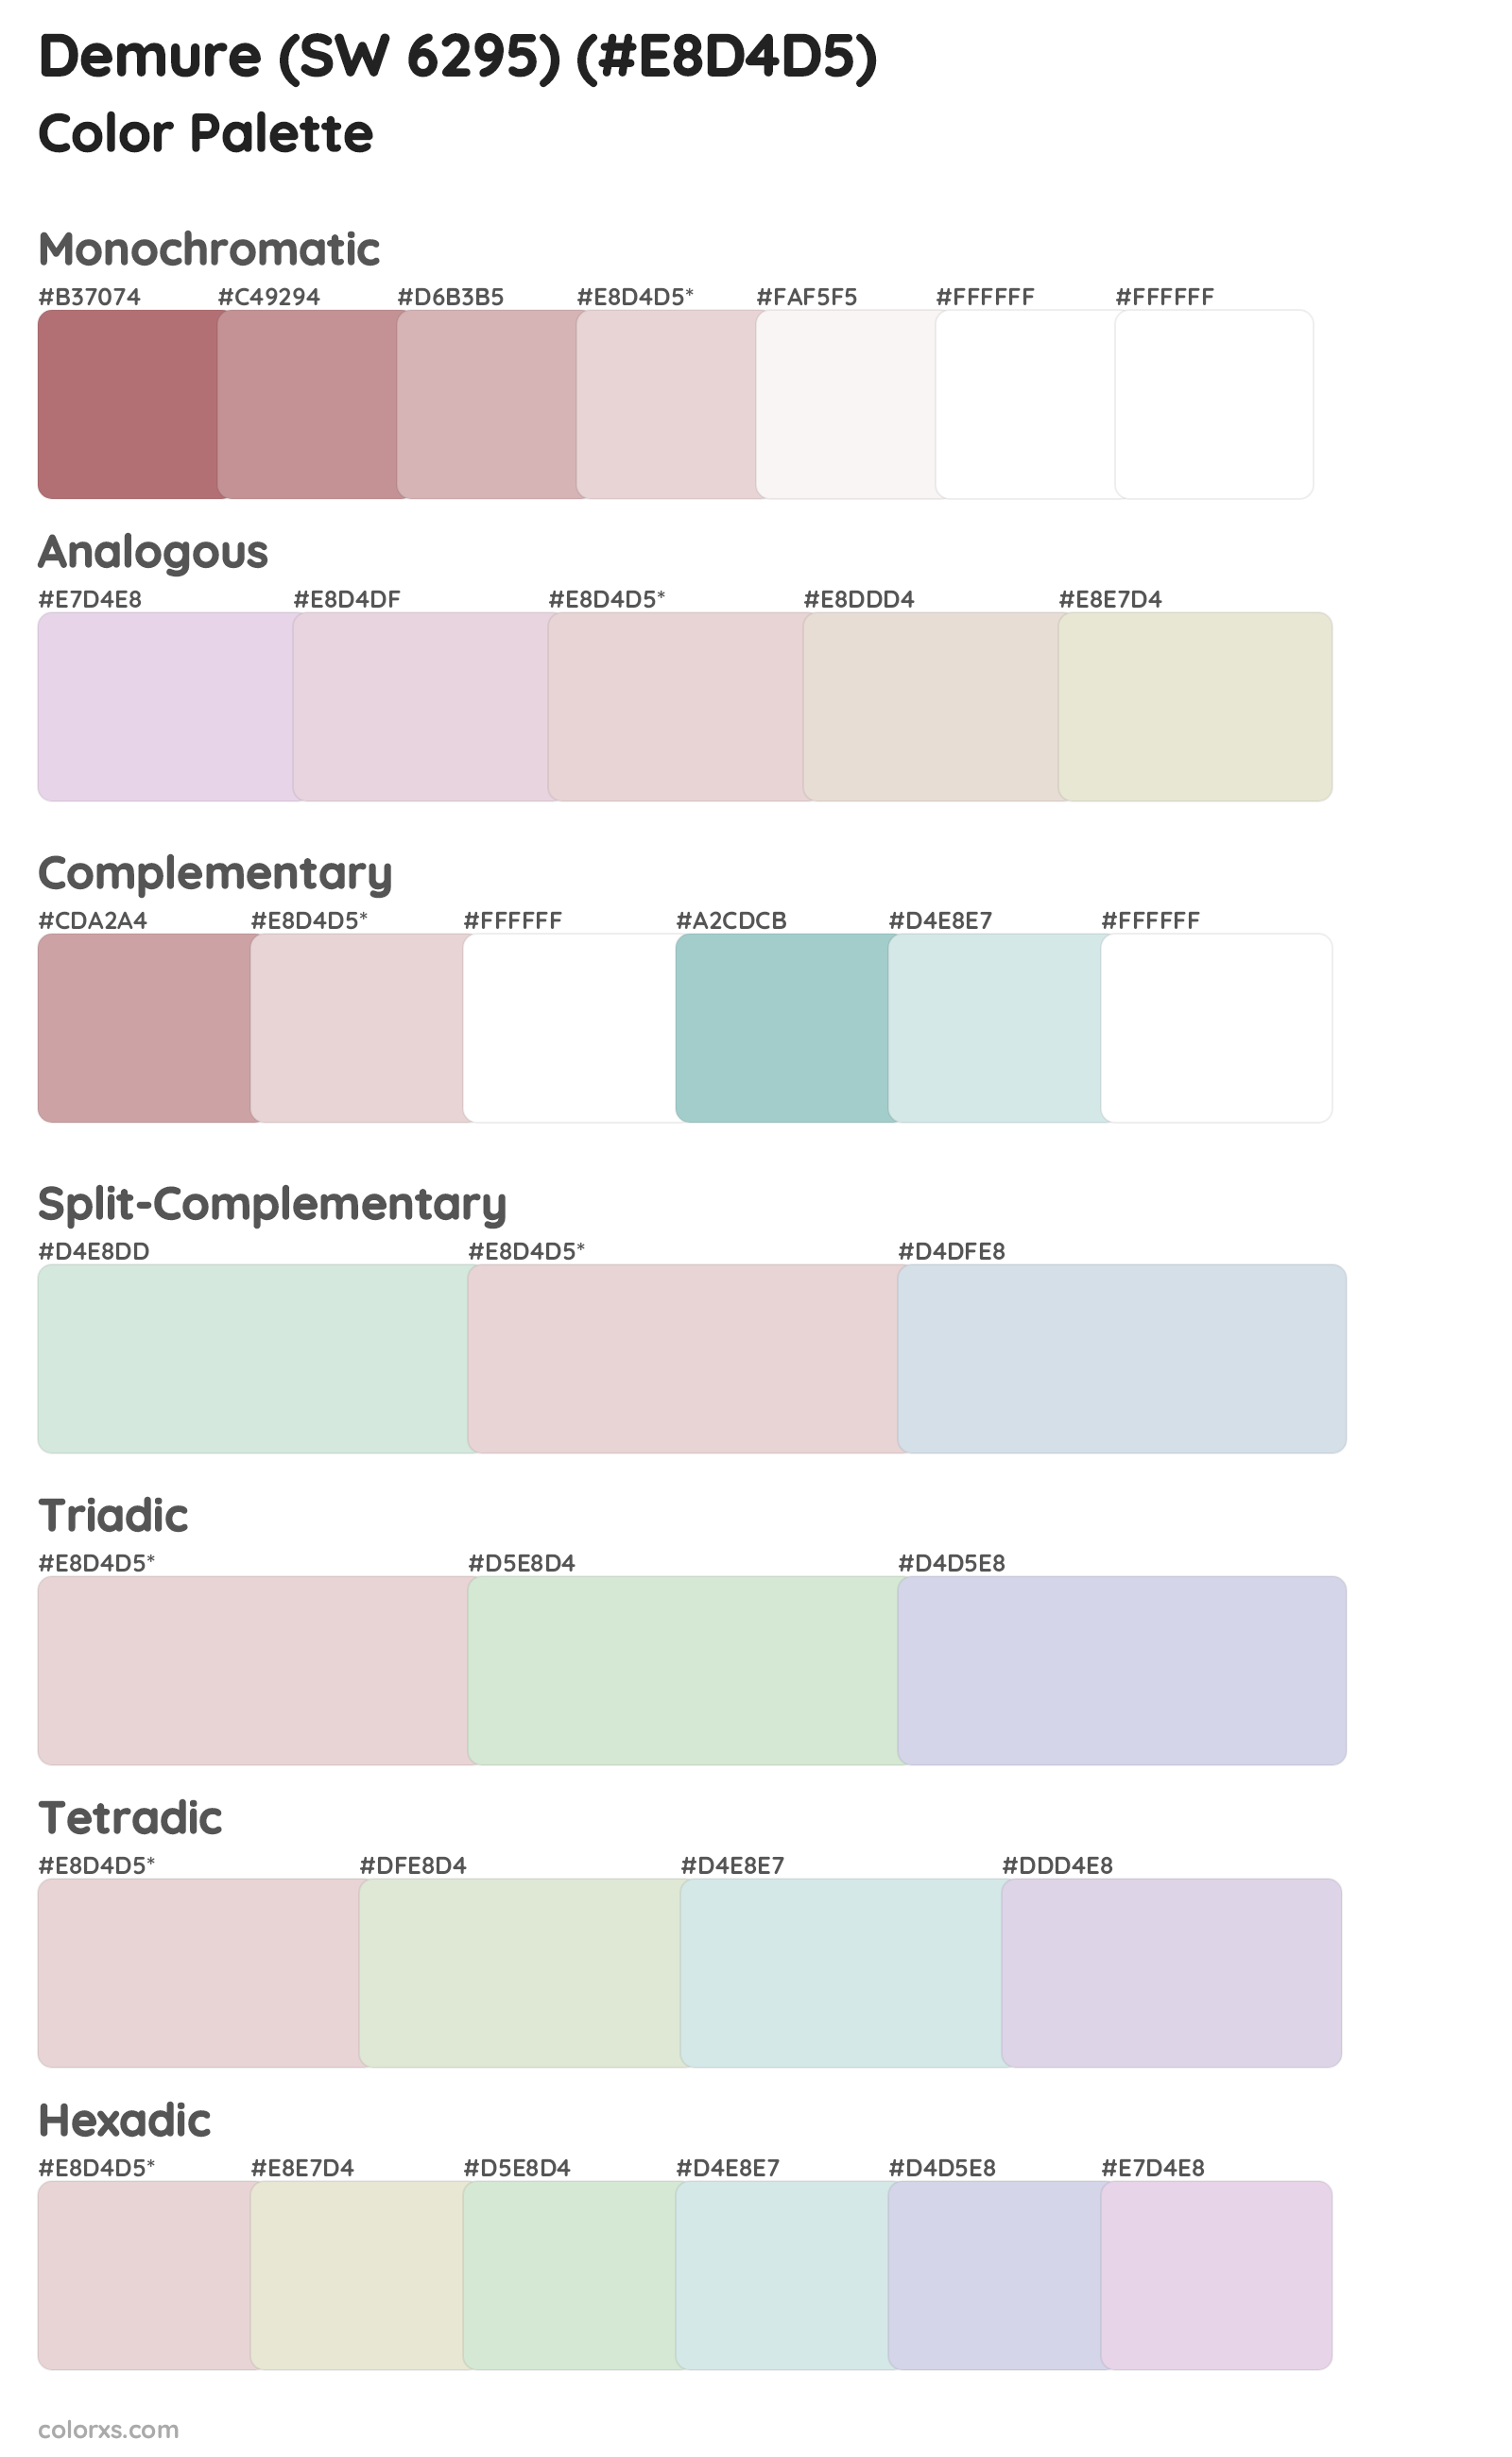 Demure (SW 6295) Color Scheme Palettes